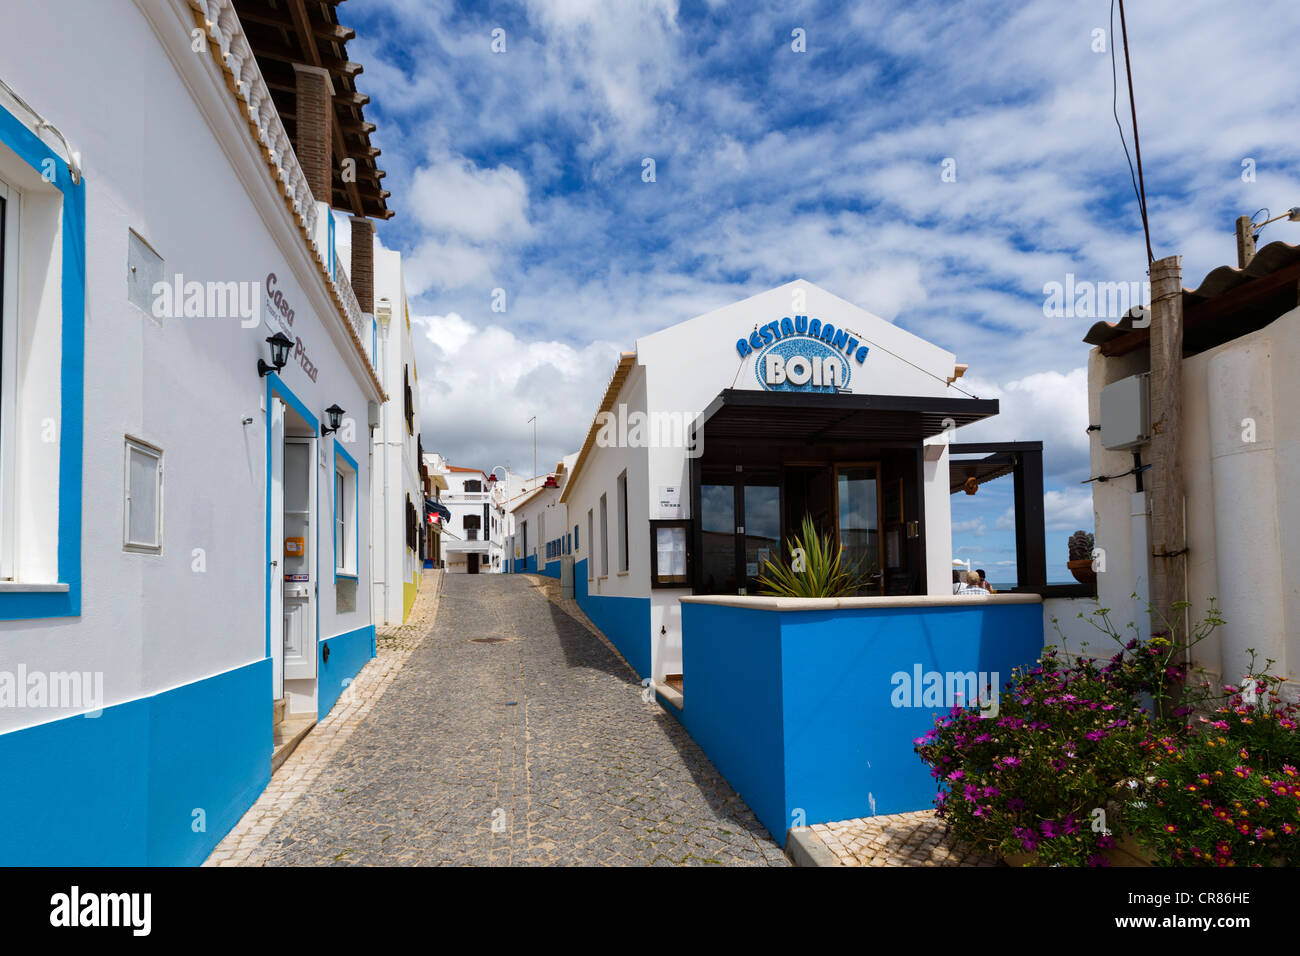 Rue typique dans le village de pêcheurs de Salema, sur la côte entre Sagres et Lagos, Algarve, Portugal Banque D'Images